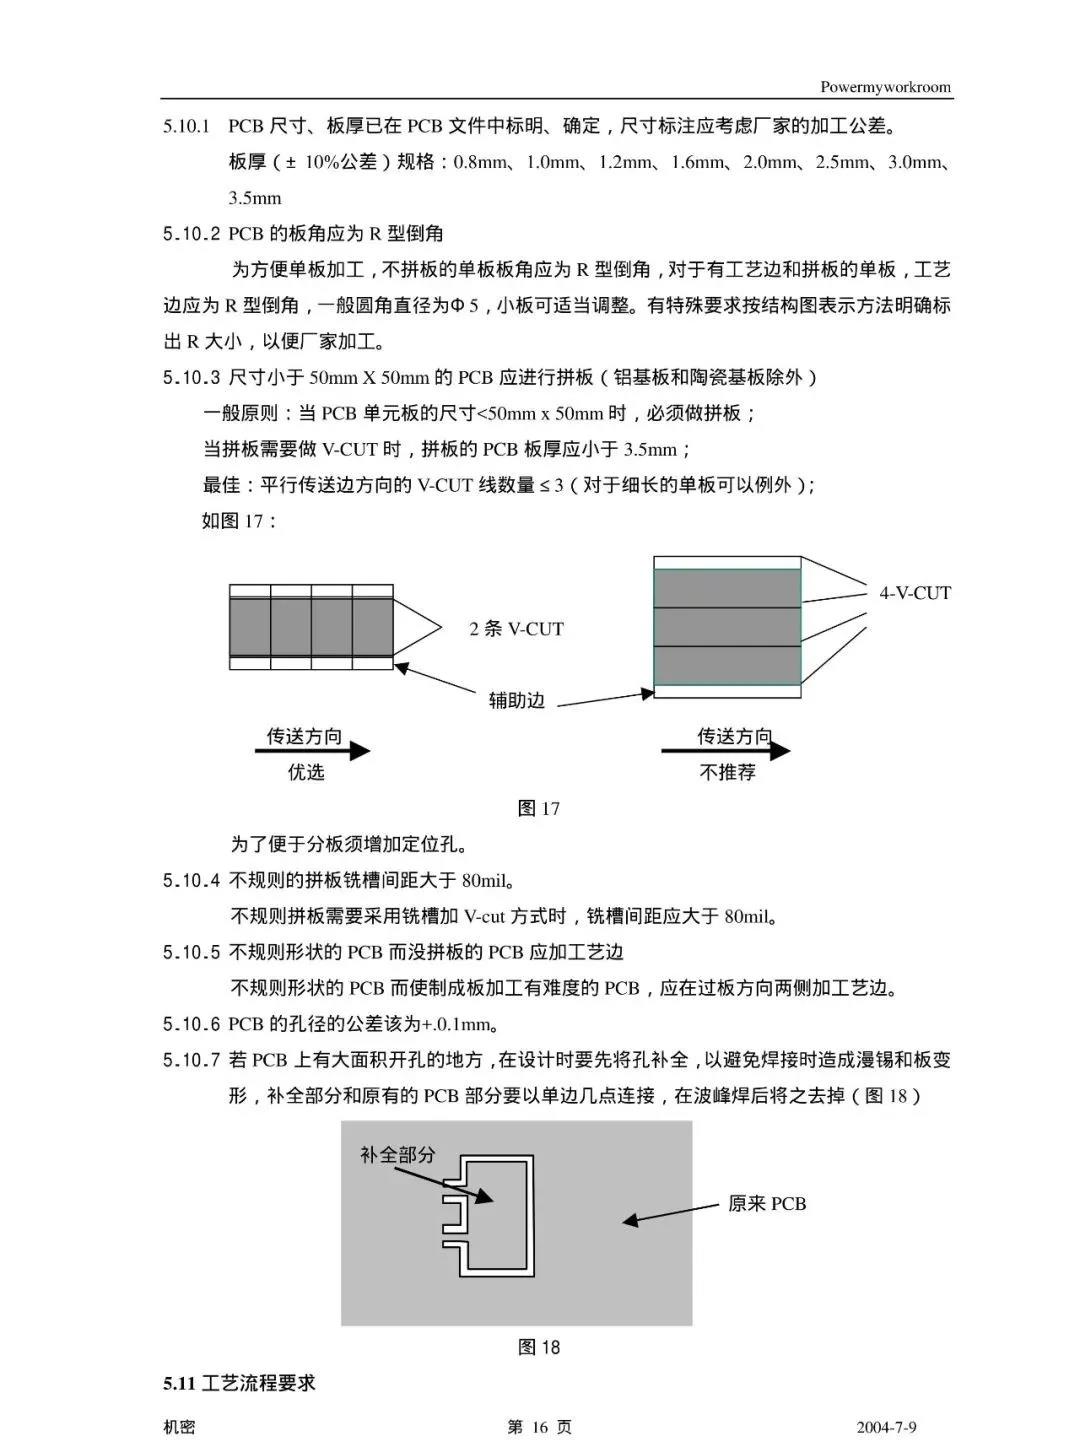 PCB 工艺设计规范(图17)